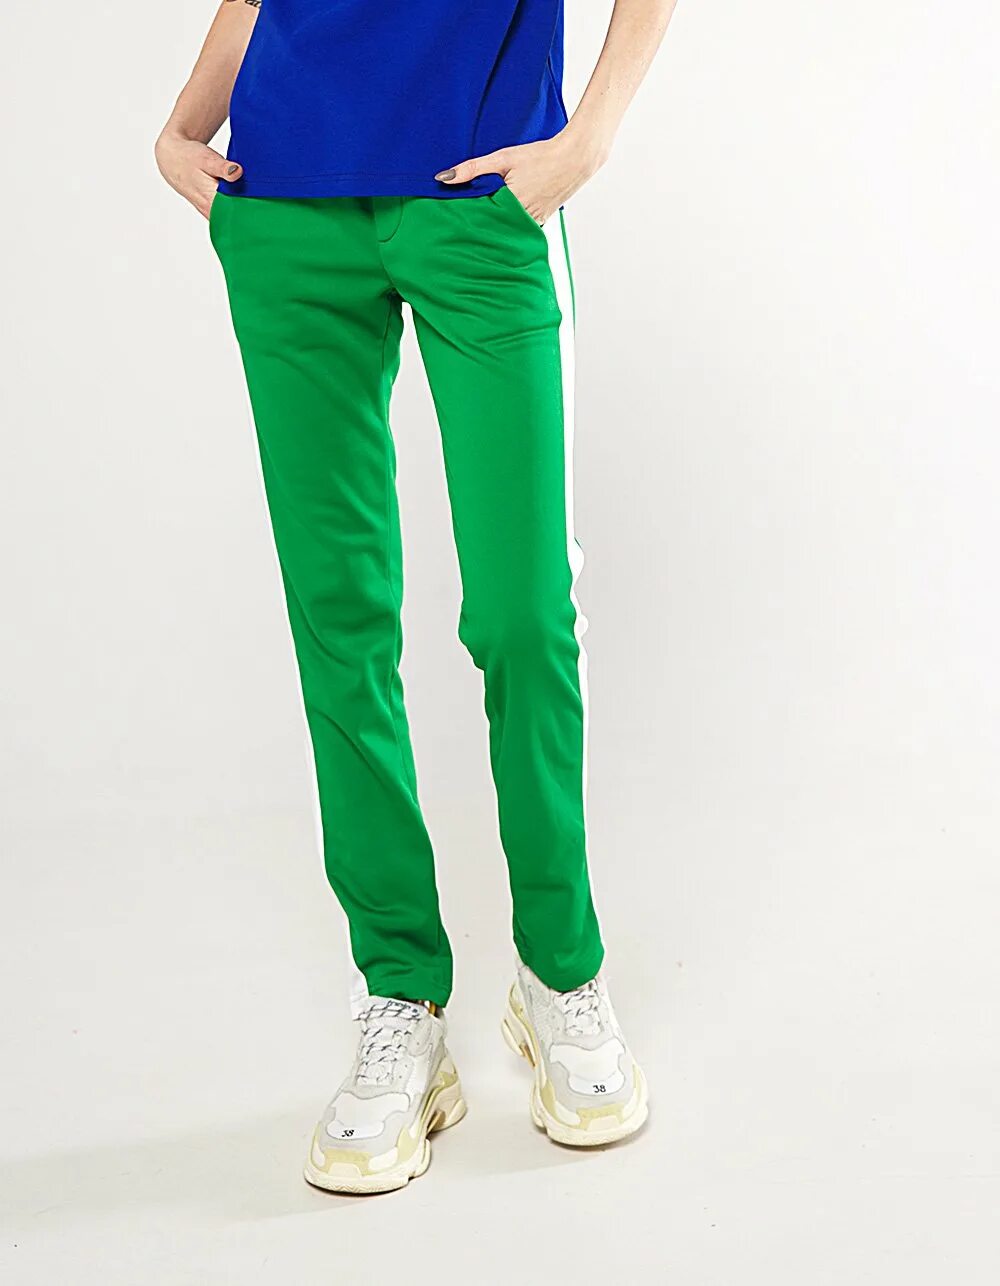 Купить зеленые штаны. Неоновые штаны зеленые карго. Machine 56 зеленые штаны. Зелёные штаны женские. Салатовые брюки.